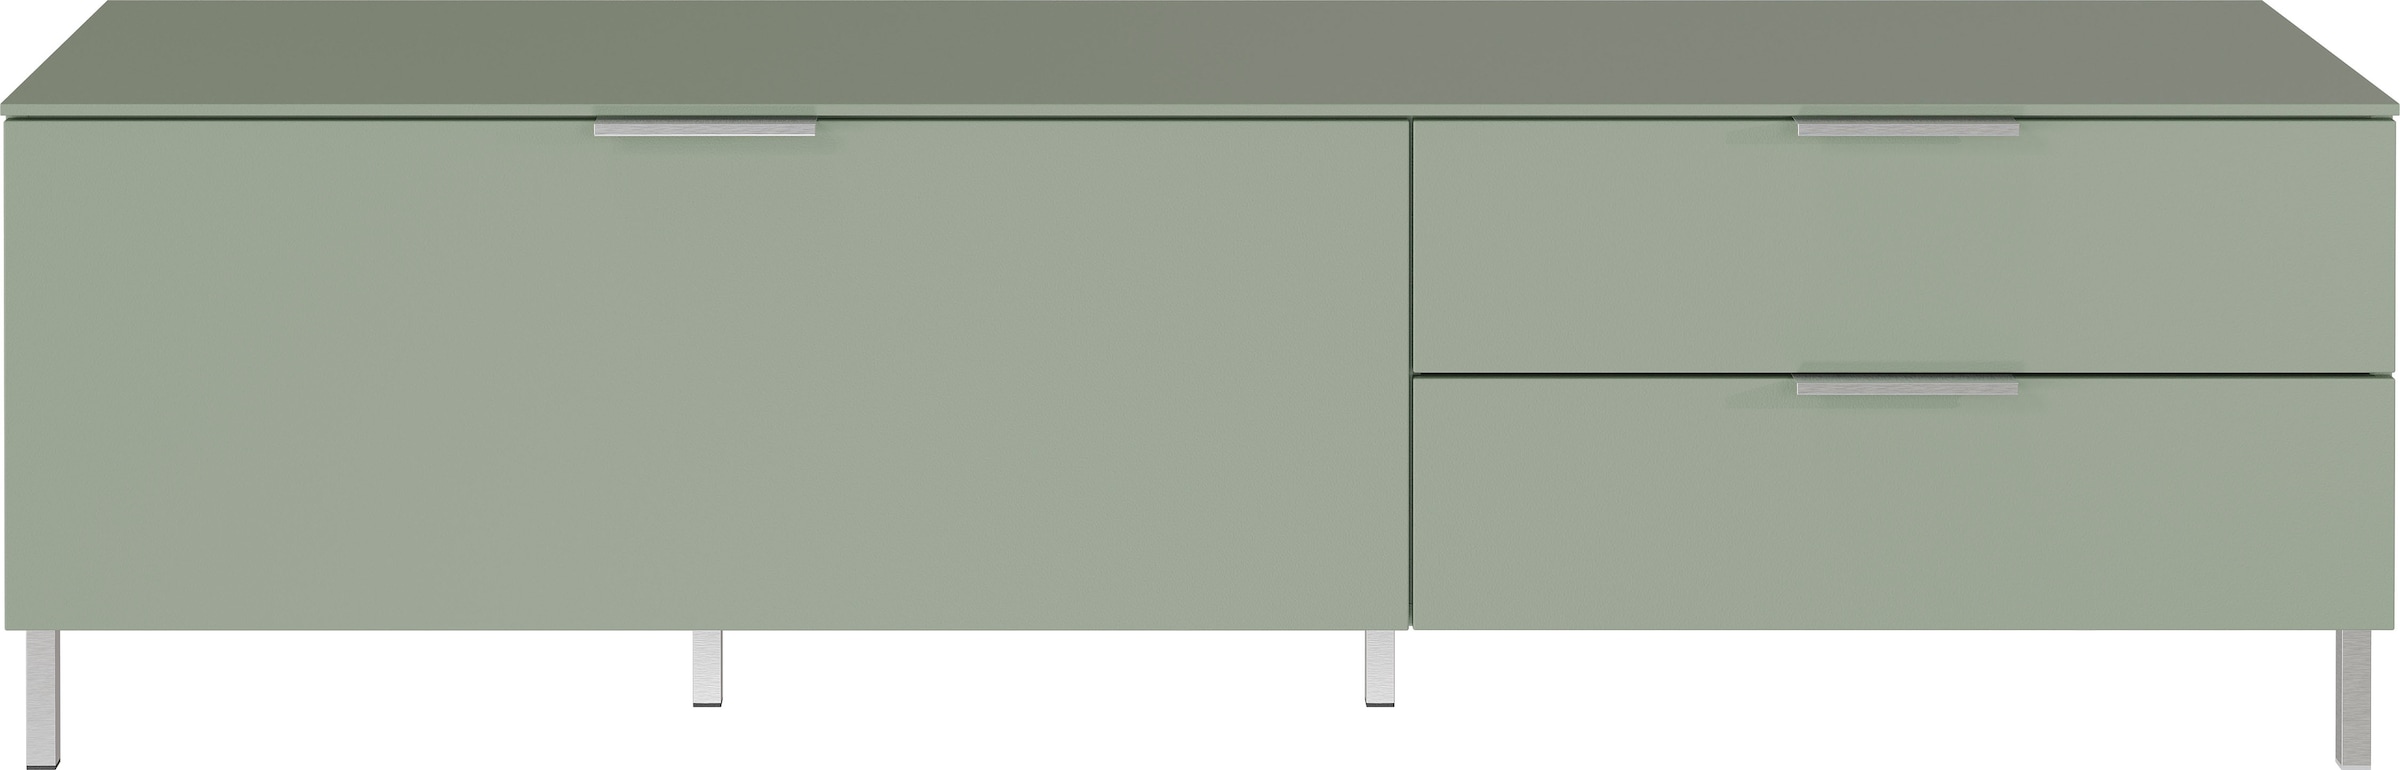 GERMANIA Lowboard "Kenora", Soft close-Funktion bei Türen und Schubladen, inkl. zwei Fußvarianten